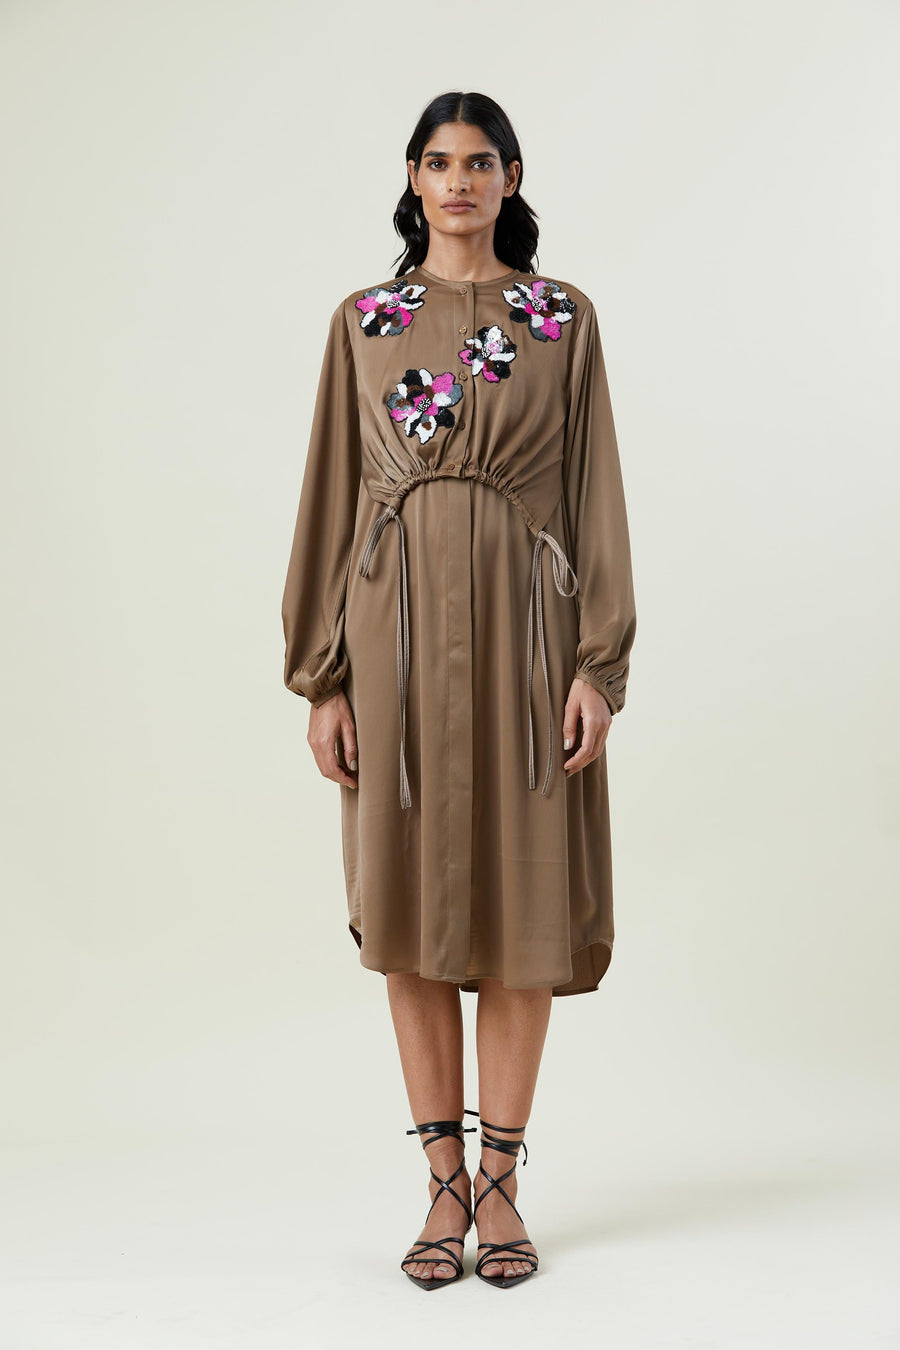 ‘AYLA’ OVERLAY EMBELLISHED DRESS - Kanika Goyal Label